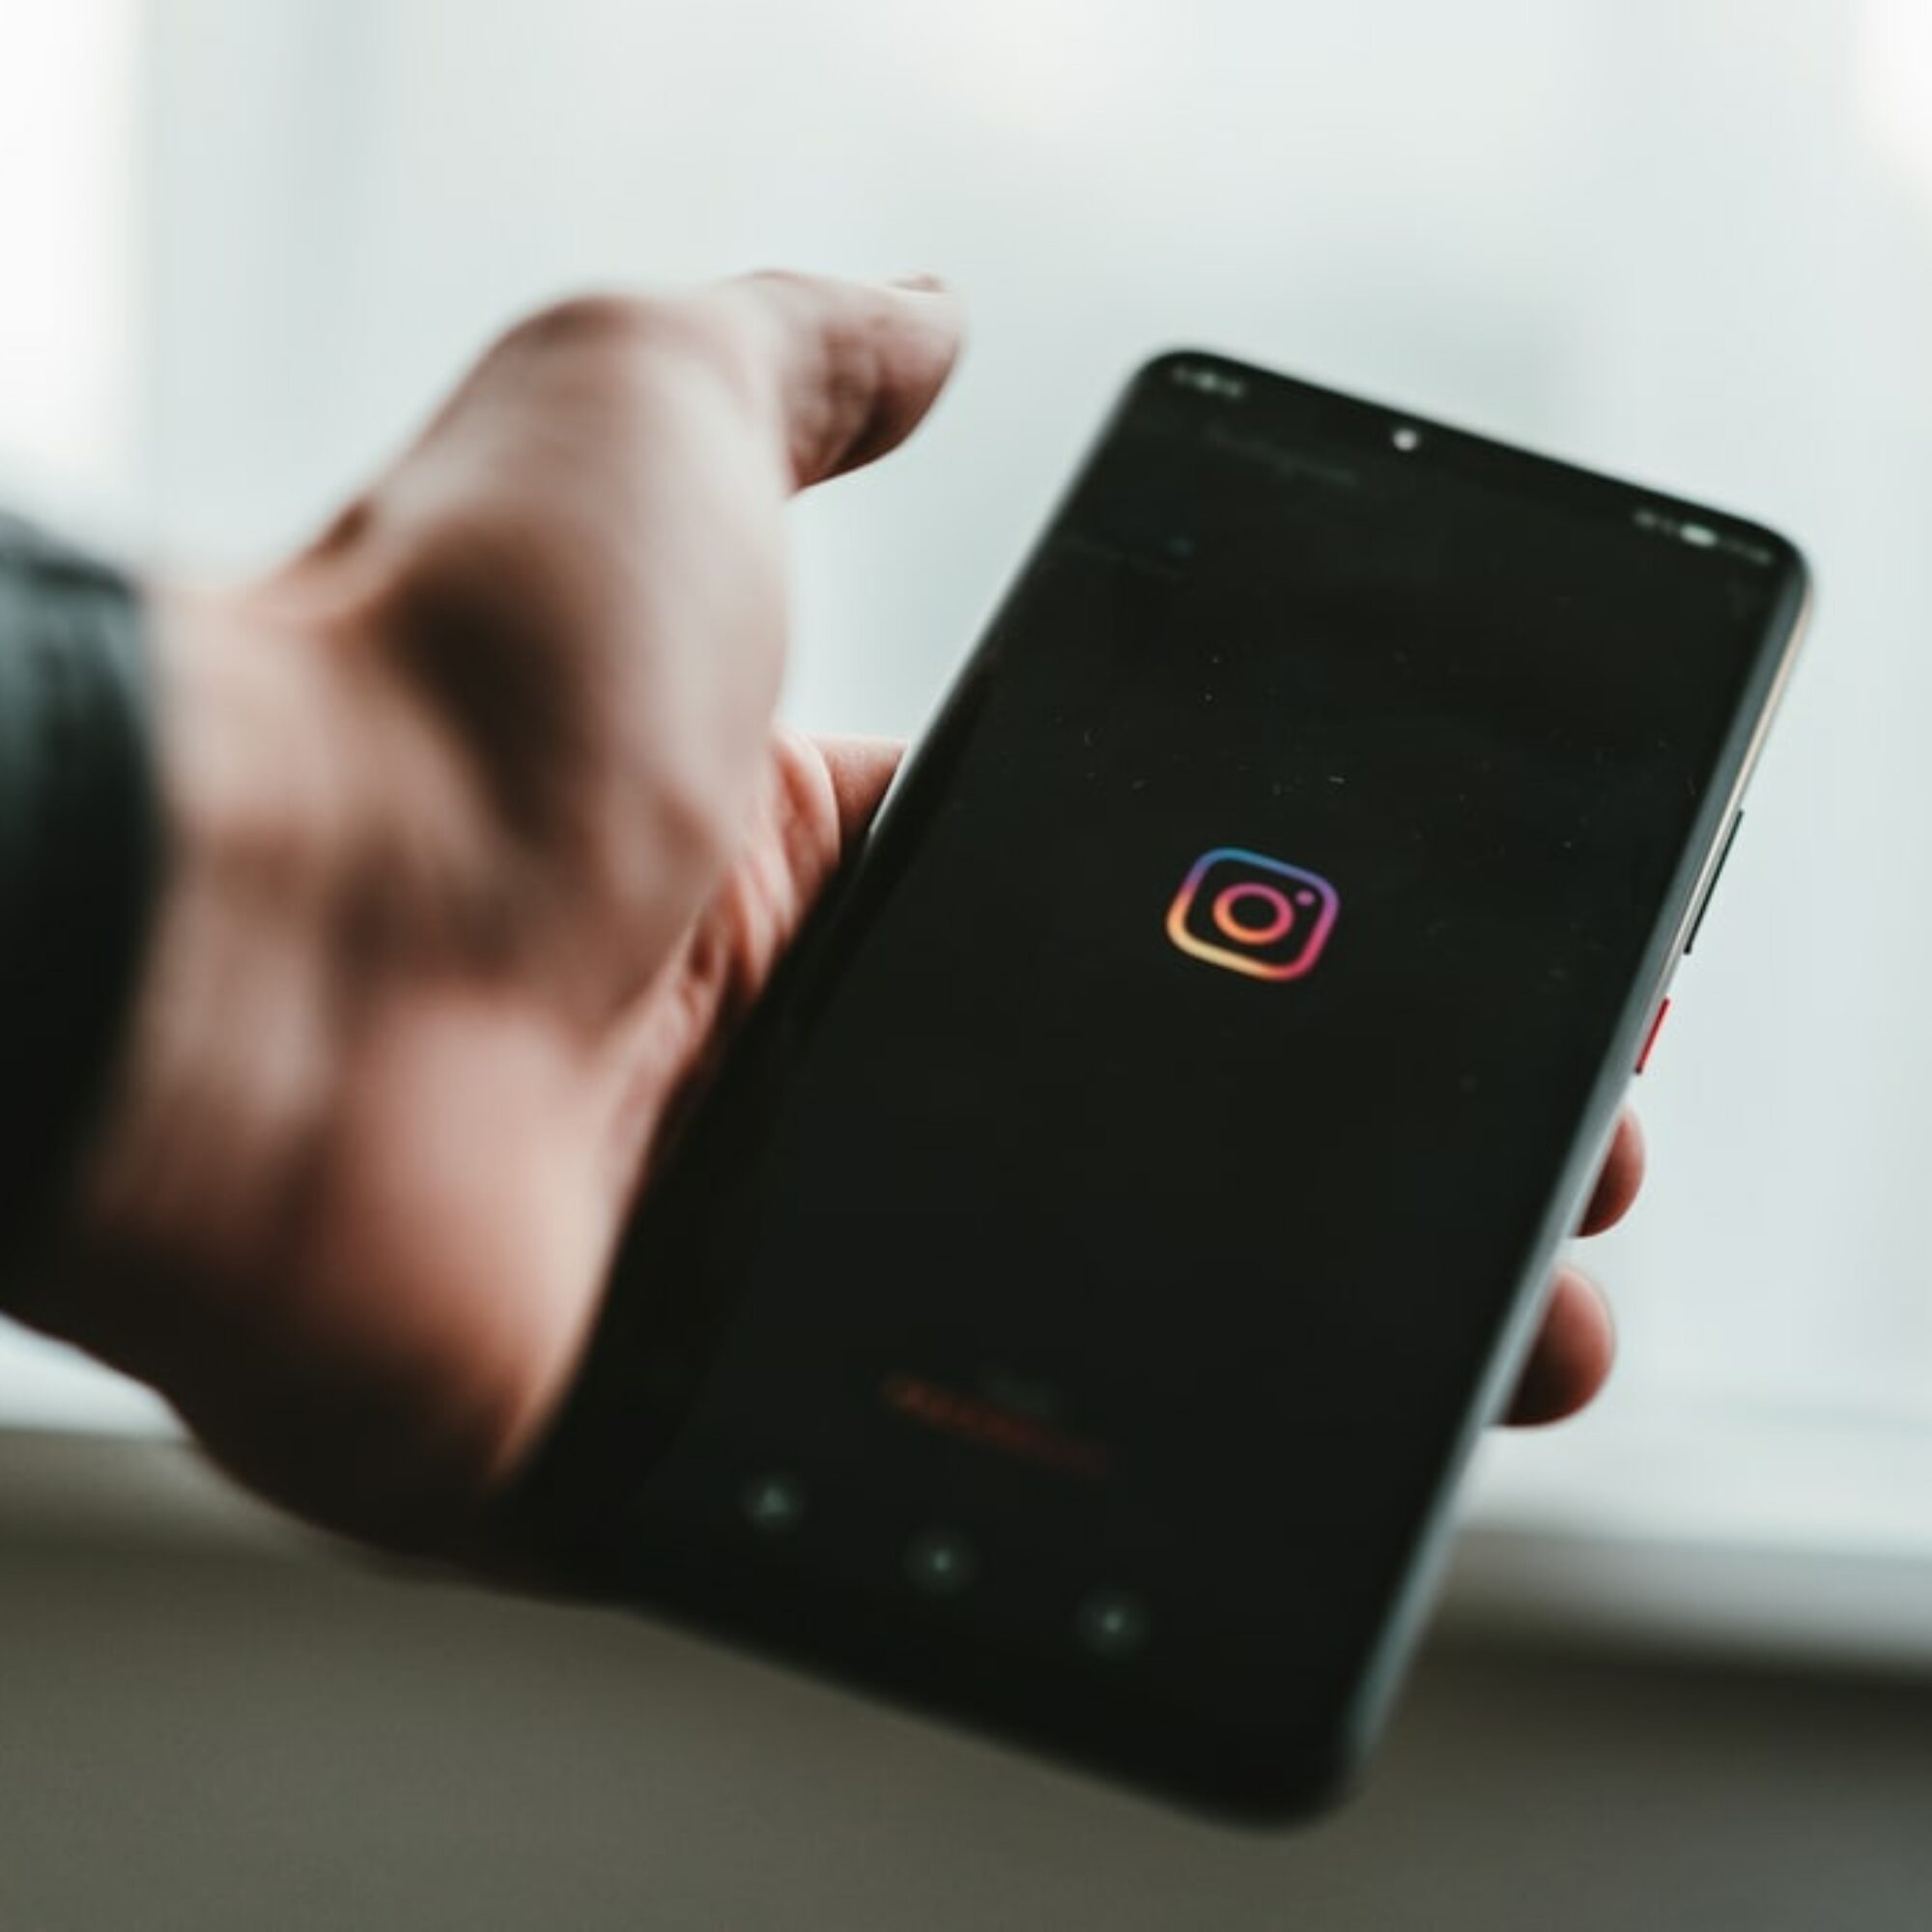 Filtre instagram : Comment les créer et les utiliser ?